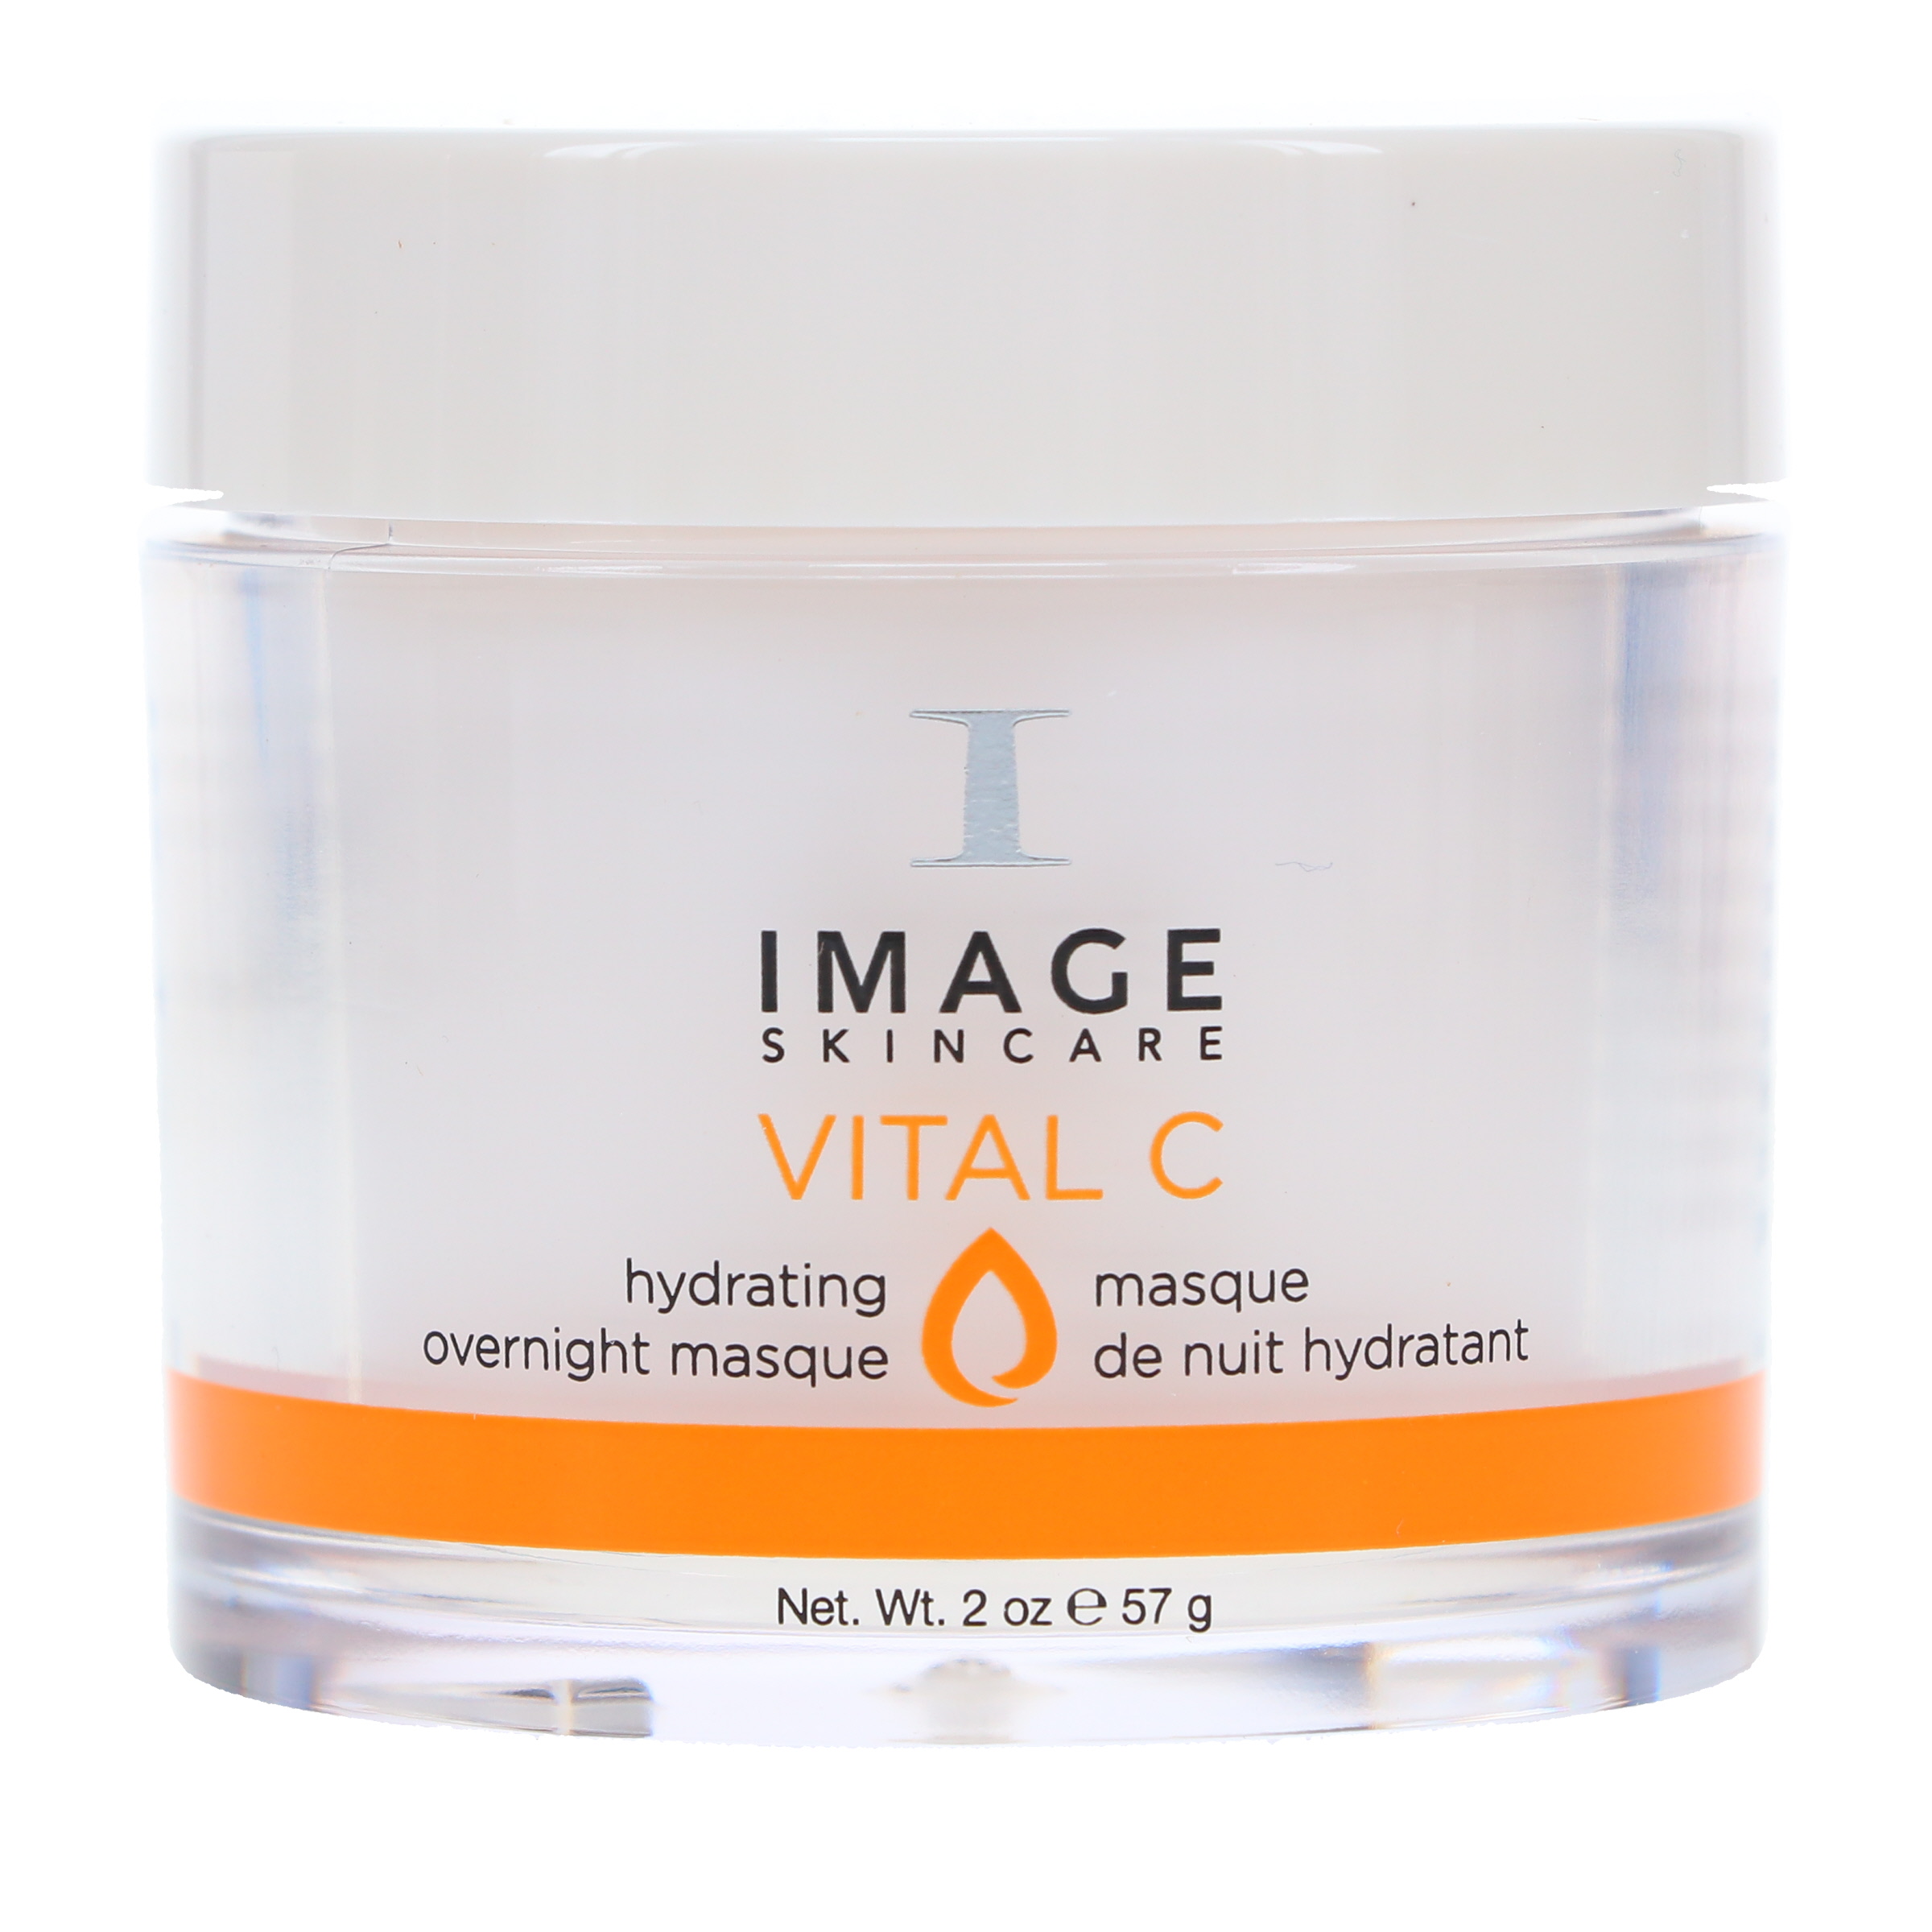 IMAGE Skincare Vital C Hydrating Overnight Masque 2 oz - image 1 of 8